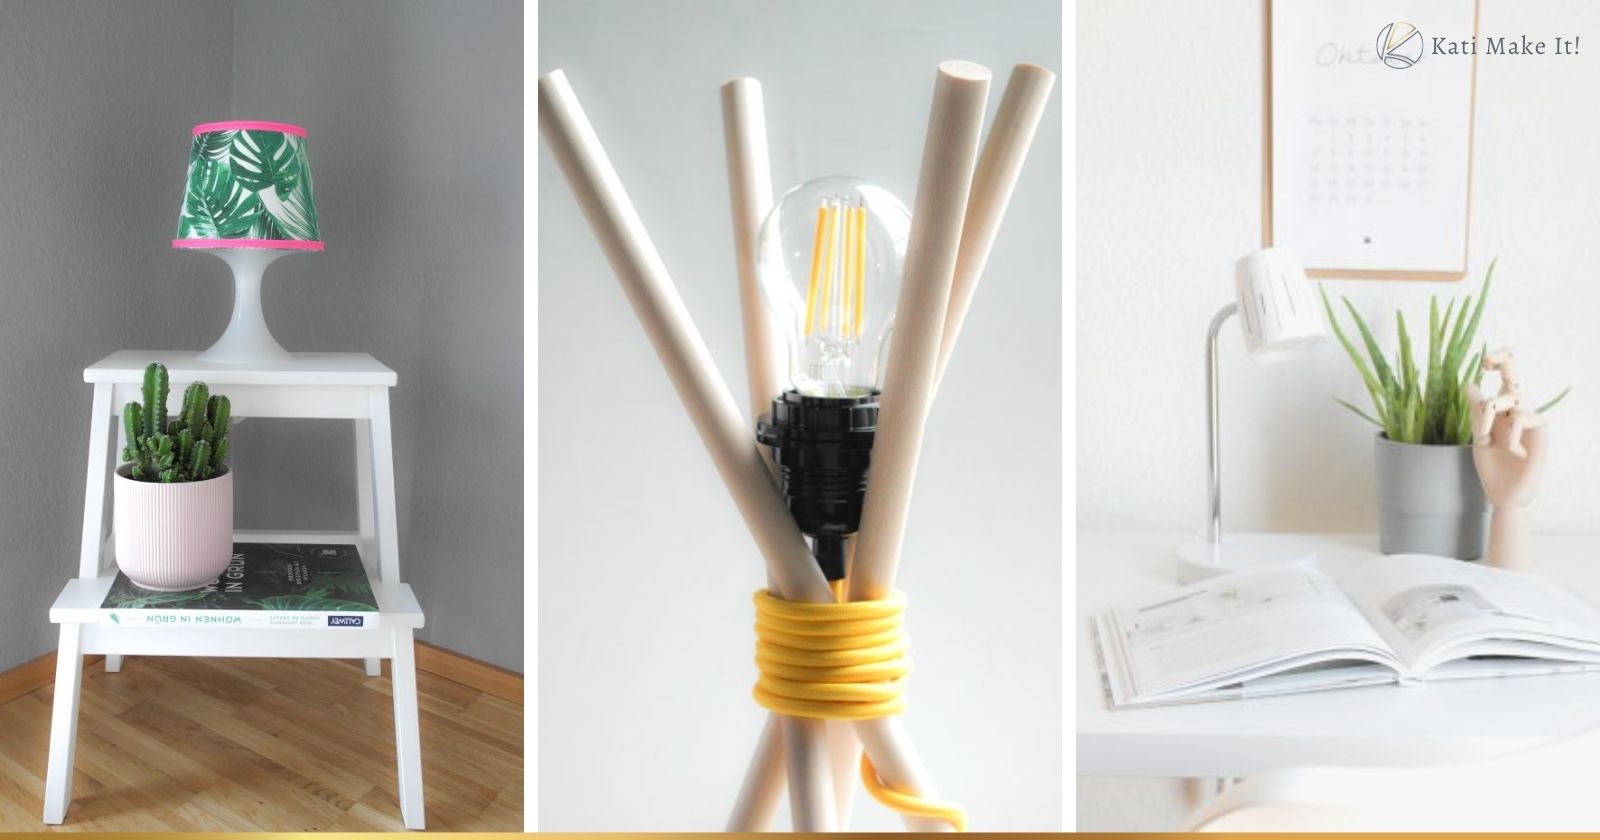 Einfache & günstige DIY Anleitungen für selbstgemachte Lampen: Lampen selber machen ist super einfach und verwandelt dein Zuhause in einen echten Hingucker!